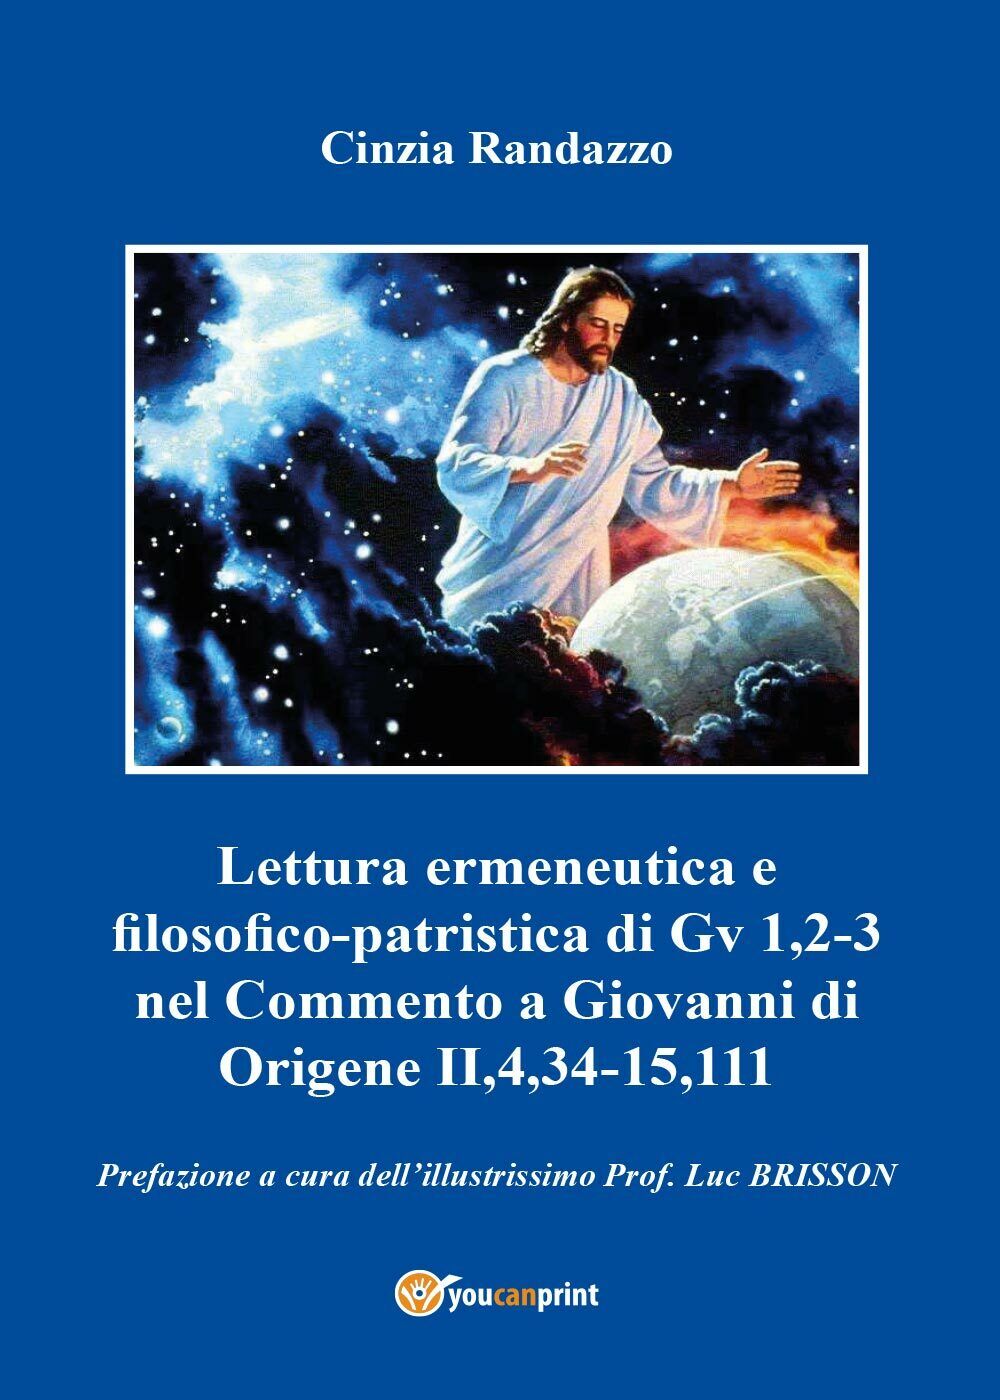 Lettura ermeneutica e filosofico-patristica di Gv 1,2-3 nel Commento a Giovanni  libro usato